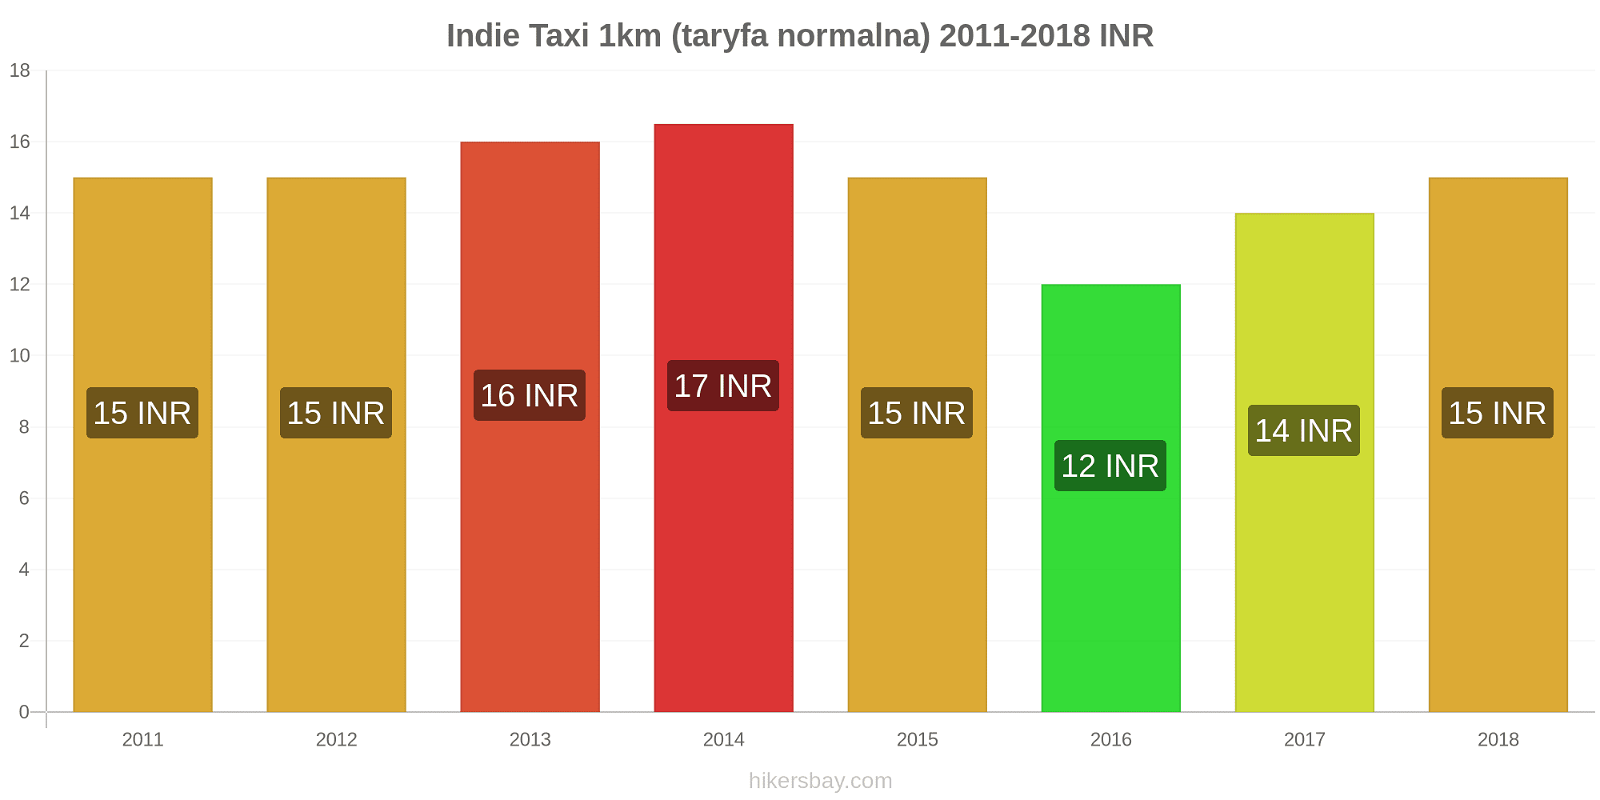 Indie zmiany cen Taxi 1km (taryfa normalna) hikersbay.com